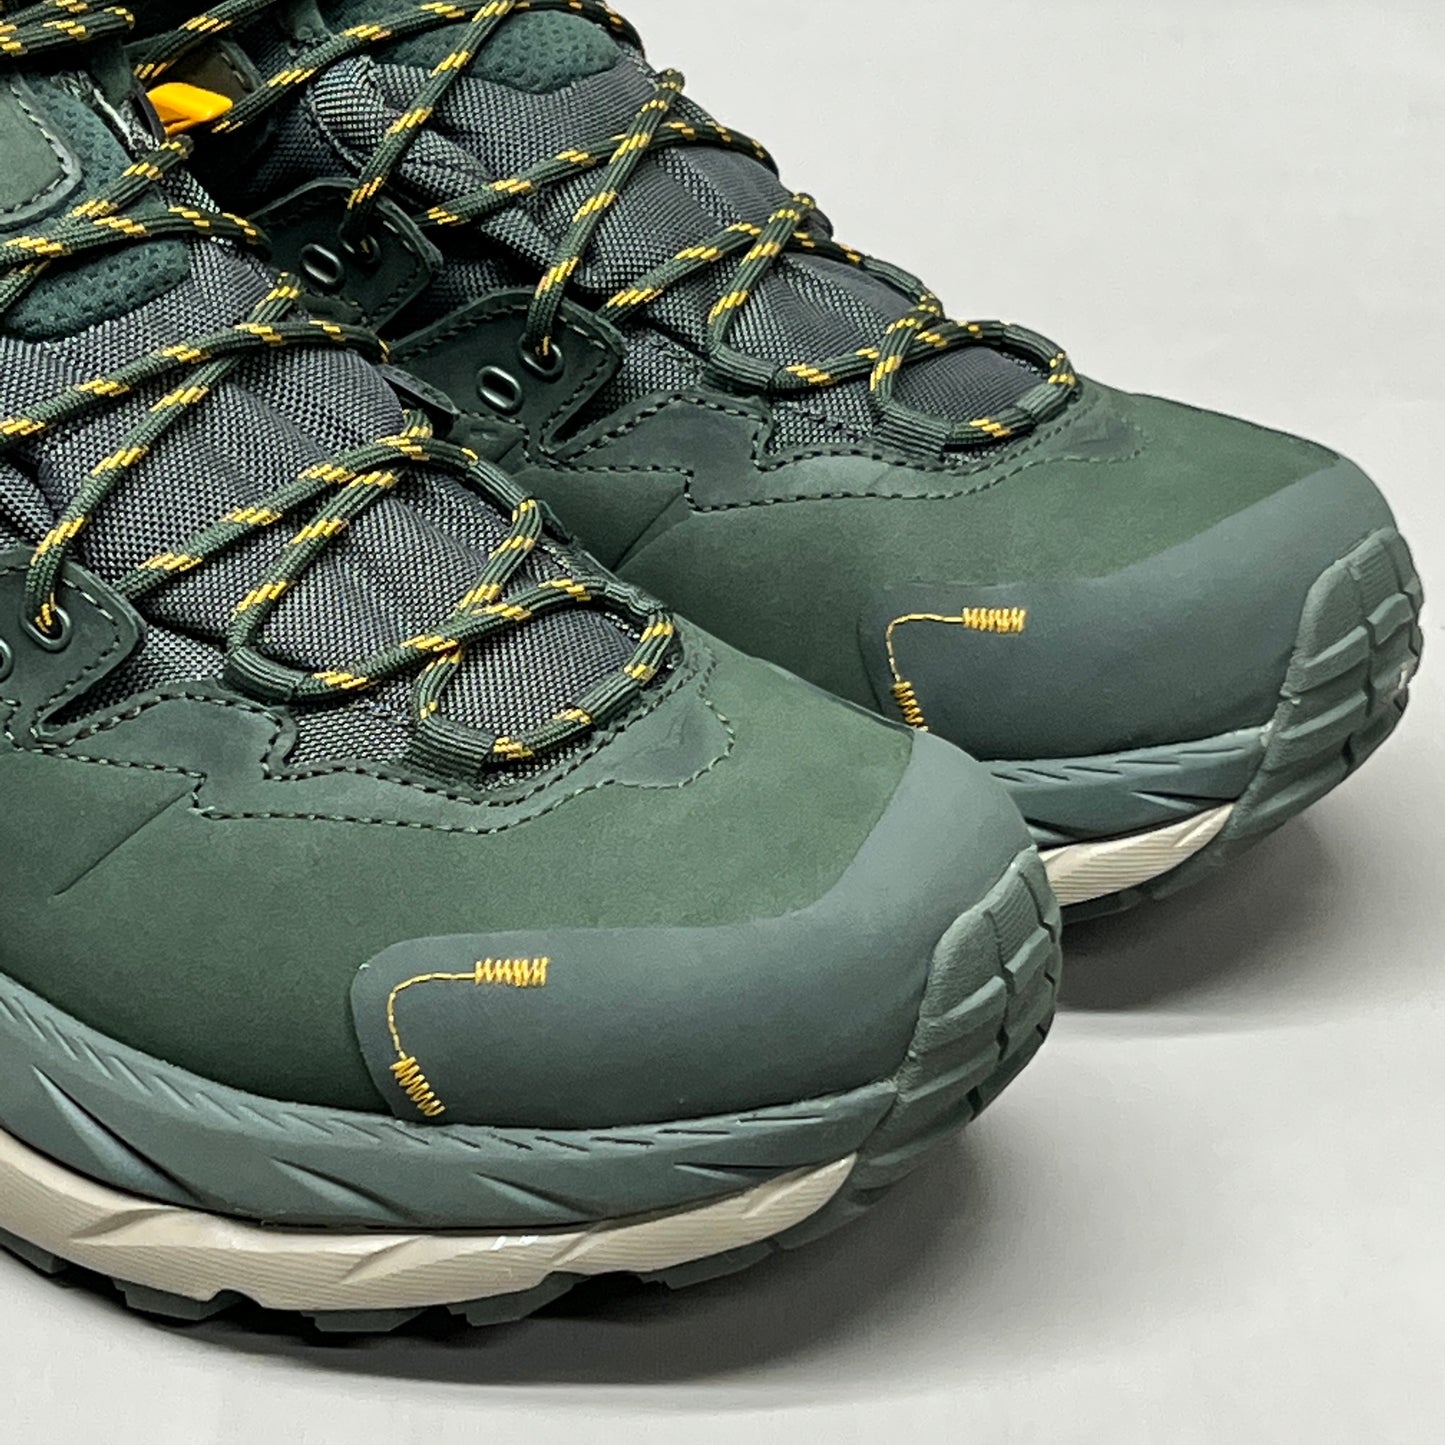 HOKA Kaha 2 GTX Shoe Men's Size 8.5D 1123155 DBRYL(New)